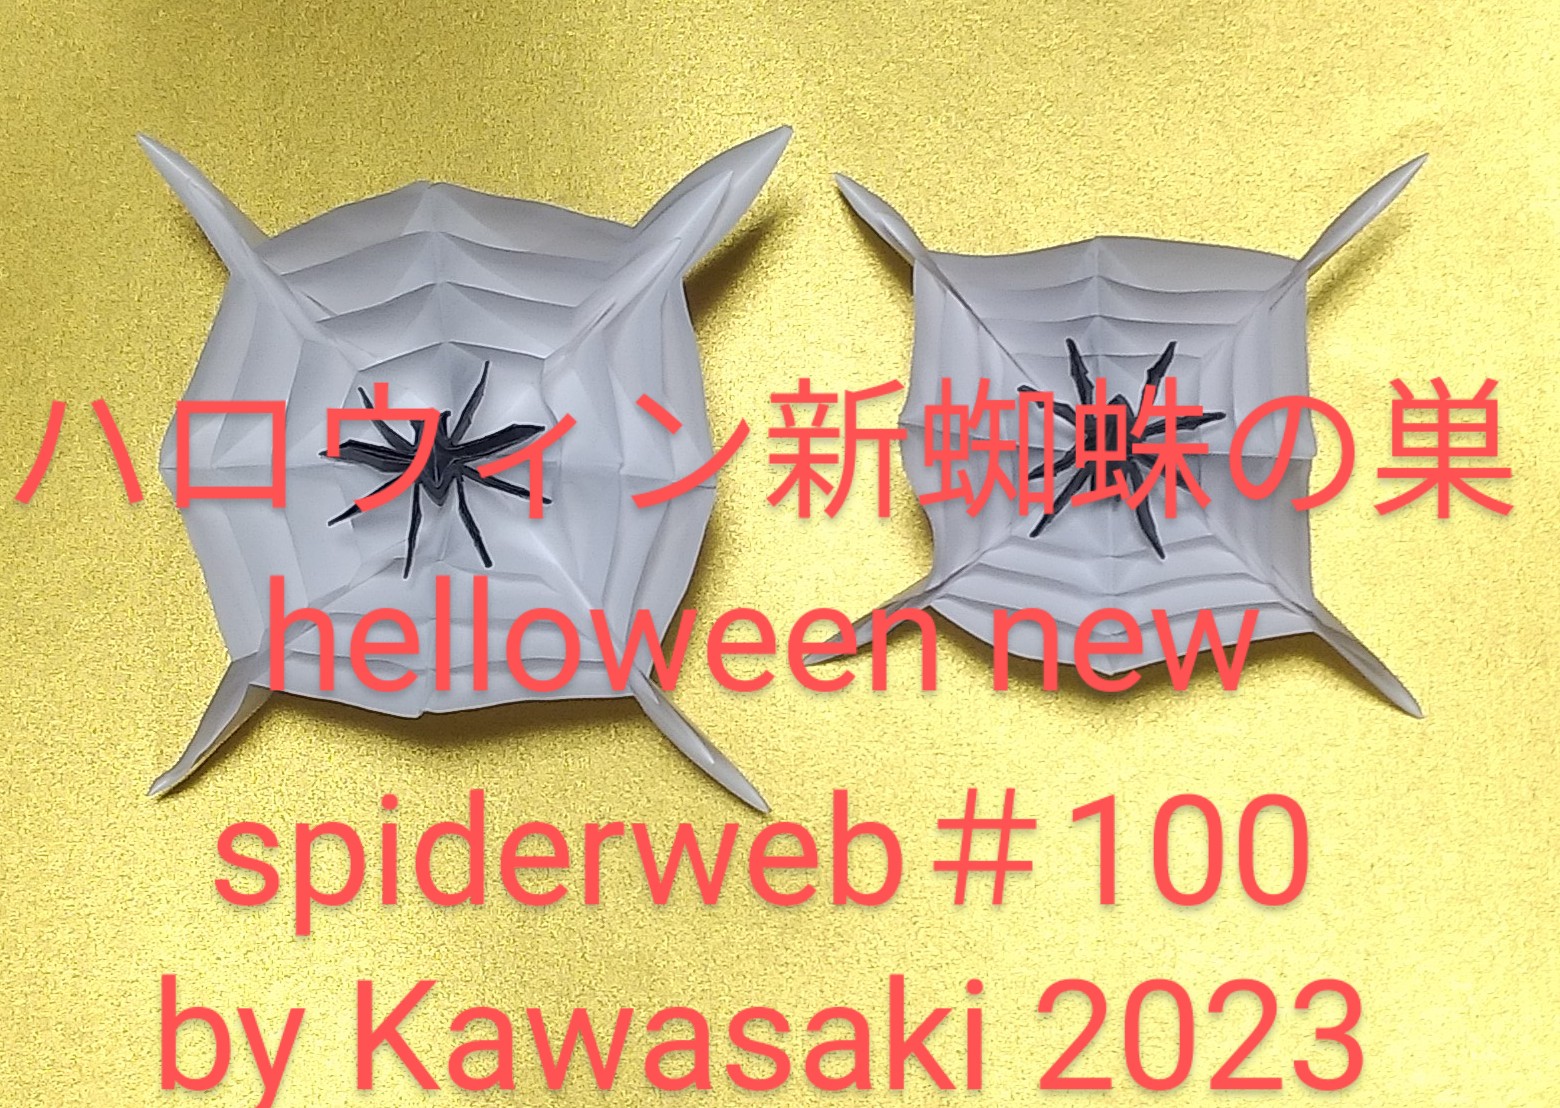 2023/10/21(Sat) 15:11「＃100ハロウィンの蜘蛛と新蜘蛛の巣 helloween spider & new spiderweb（2023年10月20日14:50）」川崎敏和 T.Kawasaki
（創作者 Author：川崎敏和 T.Kawasaki,　製作者 Folder：川崎敏和 T.Kawasaki ,　出典 Source：折り図無し no diagrm）
 （左）新しい蜘蛛の巣（右）＃99。同サイズで折った＃100は＃99より八角で大きく優れていることがわかります。ただし、折るのが若干難しい。